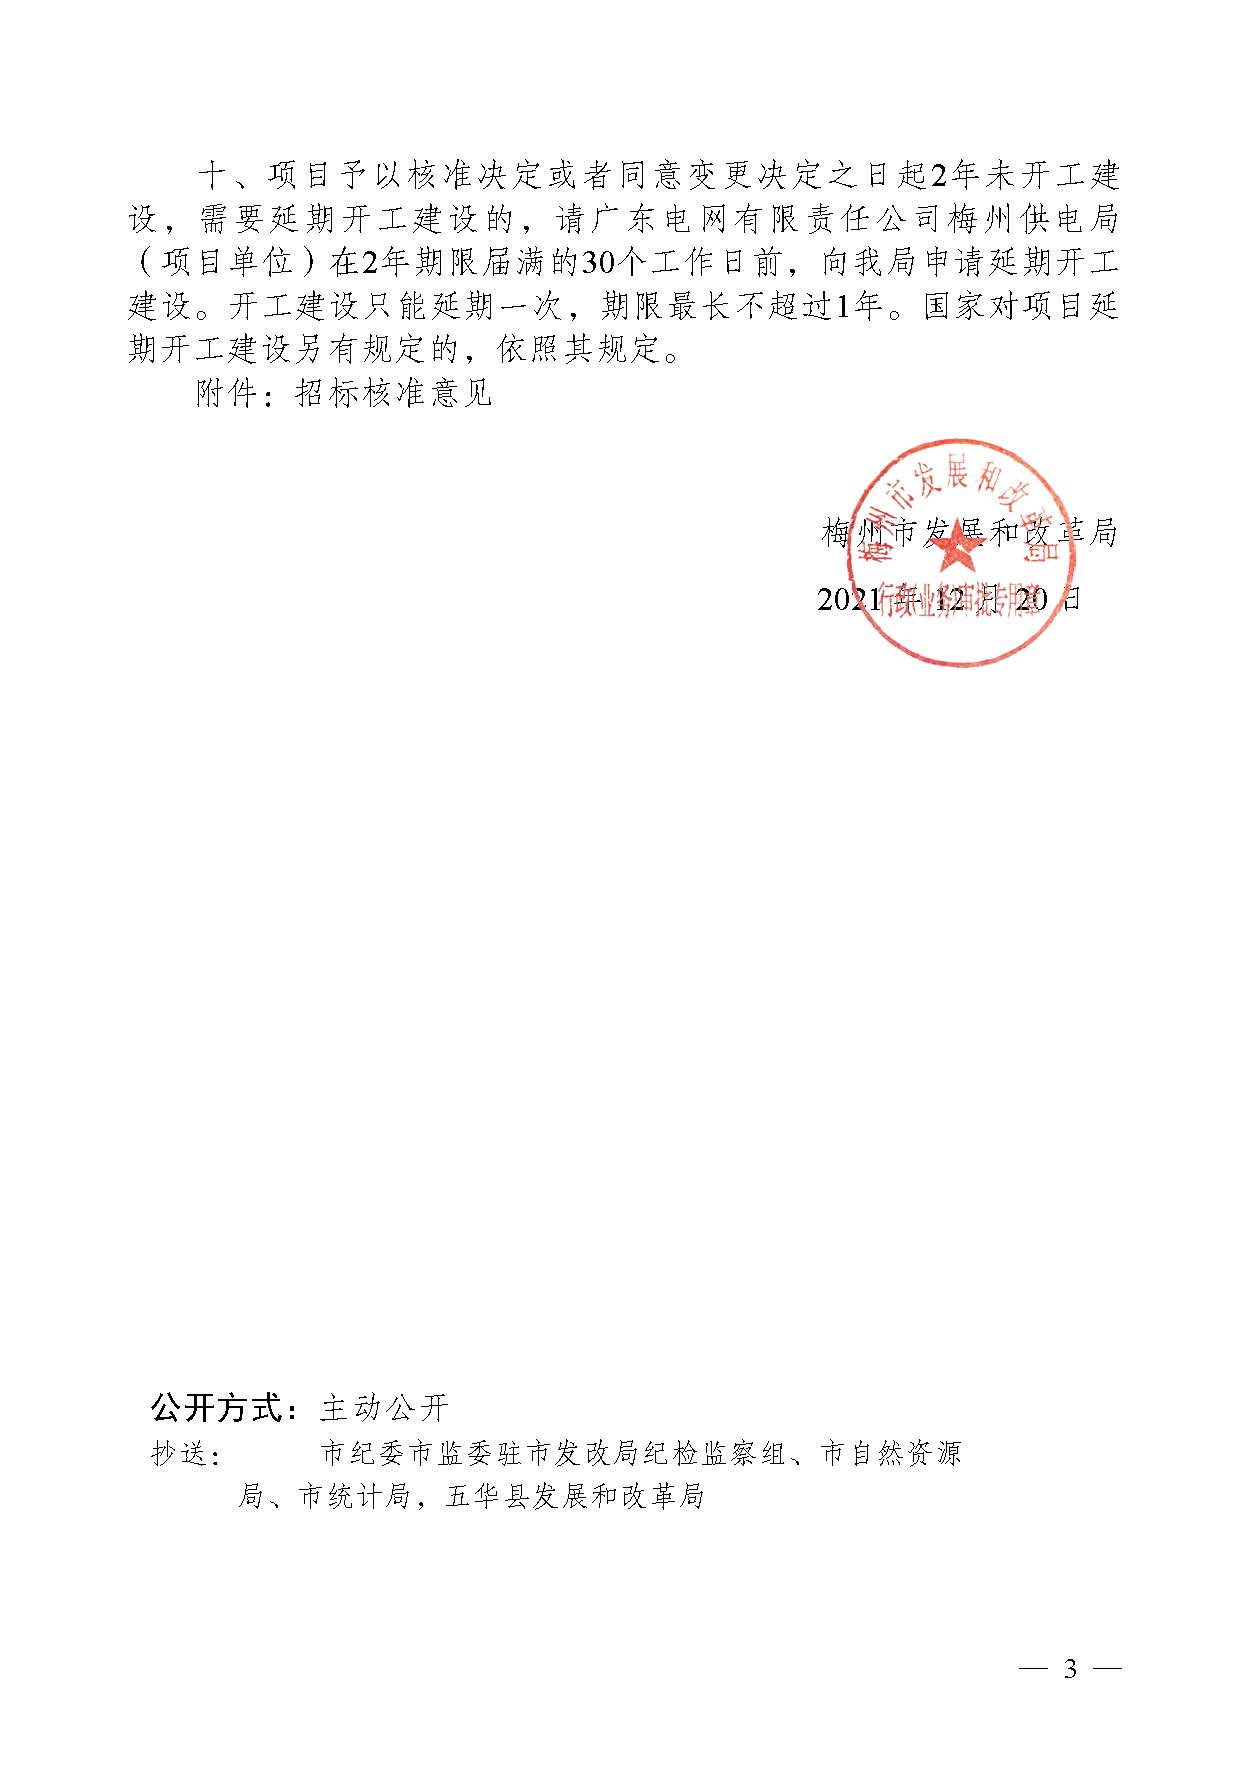 梅州市发展和改革局关于梅州五华220千伏华城输变电工程项目核准的批复_页面_3.jpg